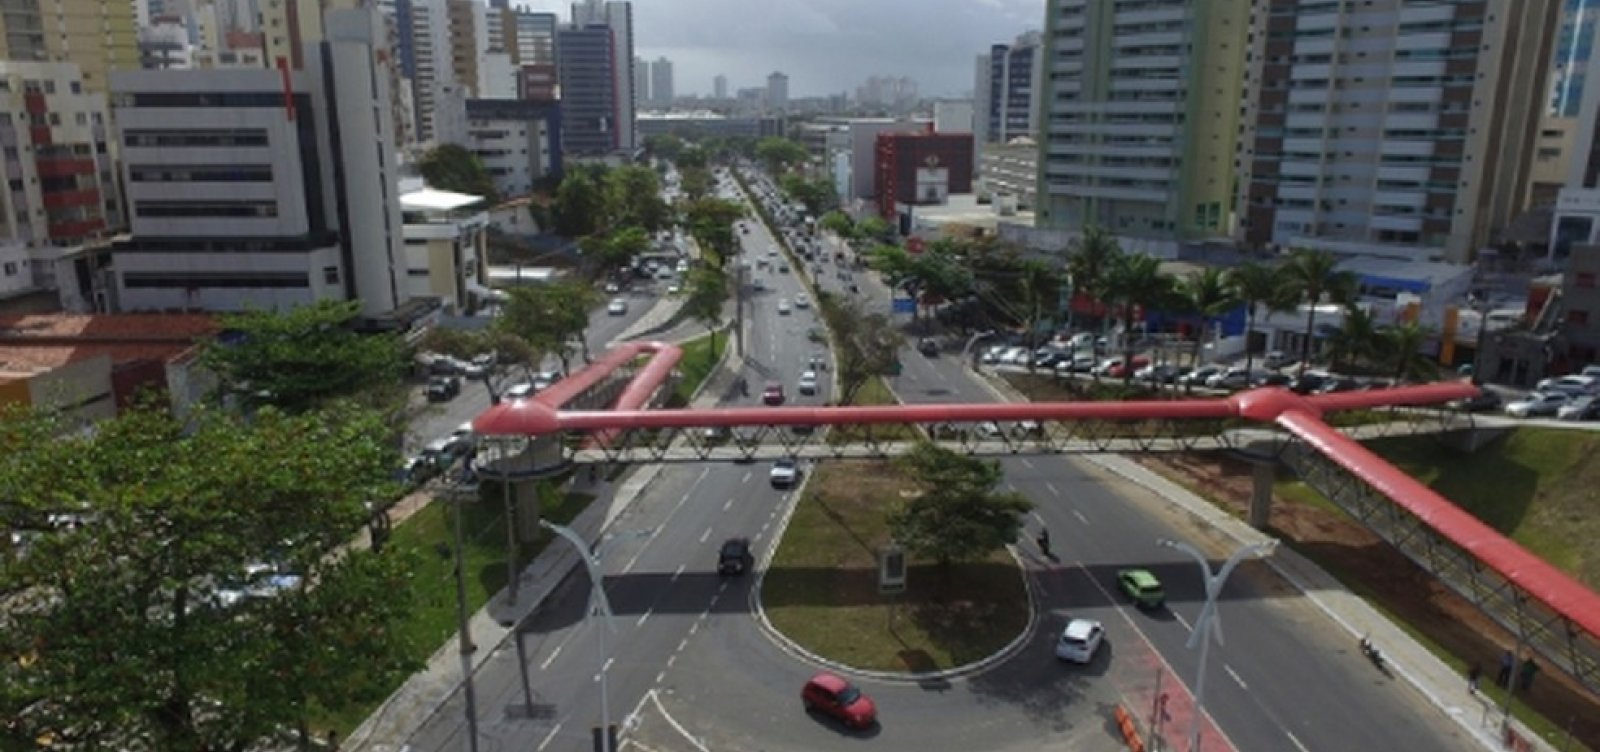 Obras do BRT causam alterações no trânsito e transporte na região da Avenida ACM 